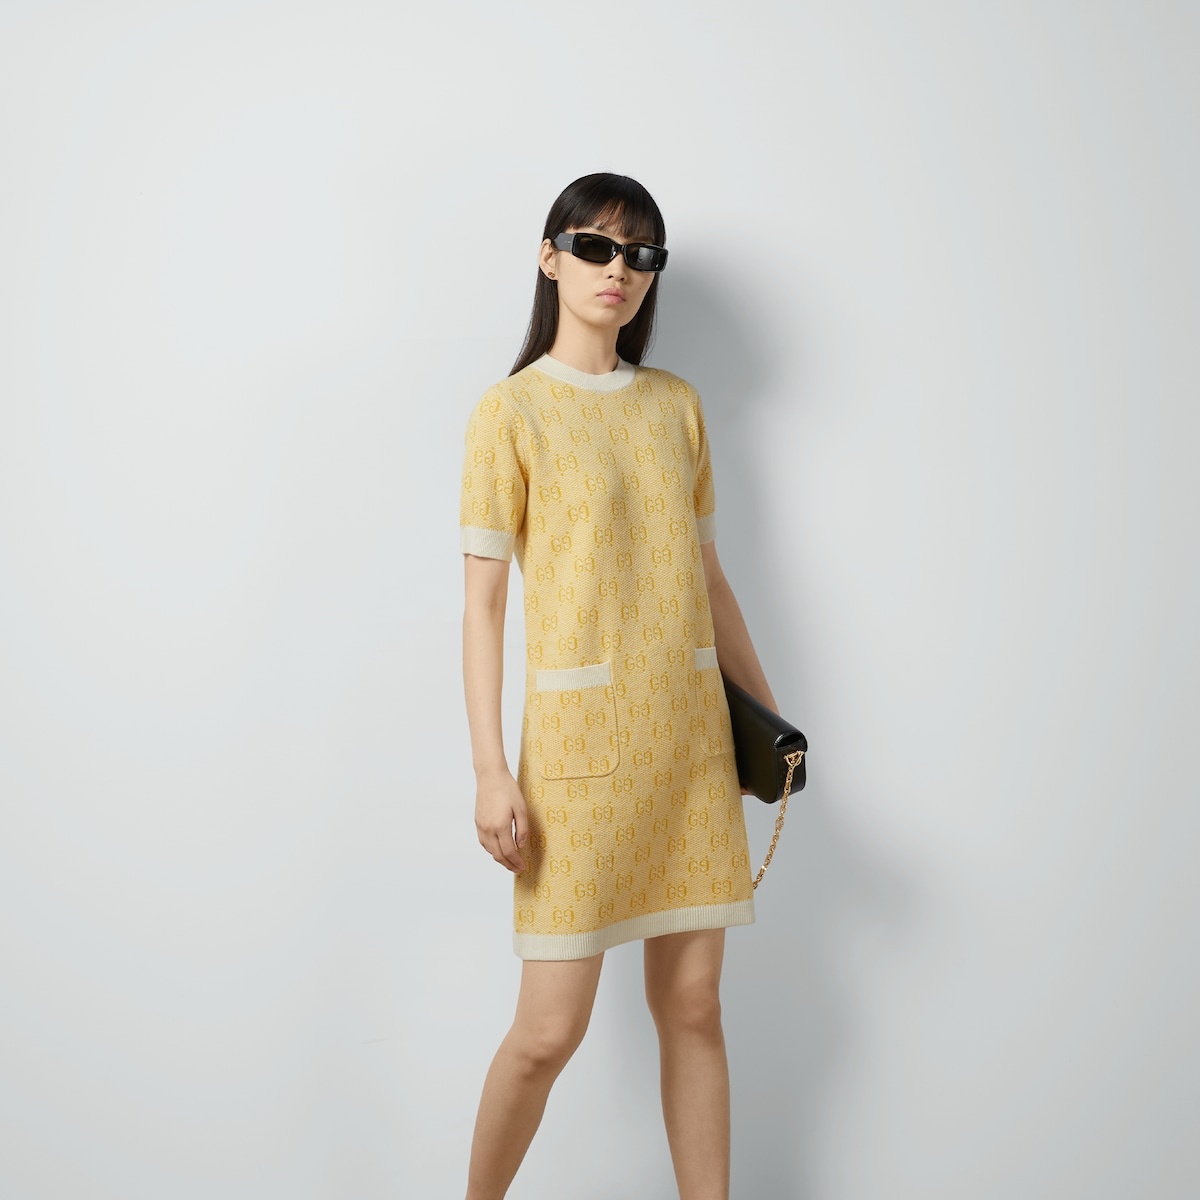 GG wool jacquard dress - 5